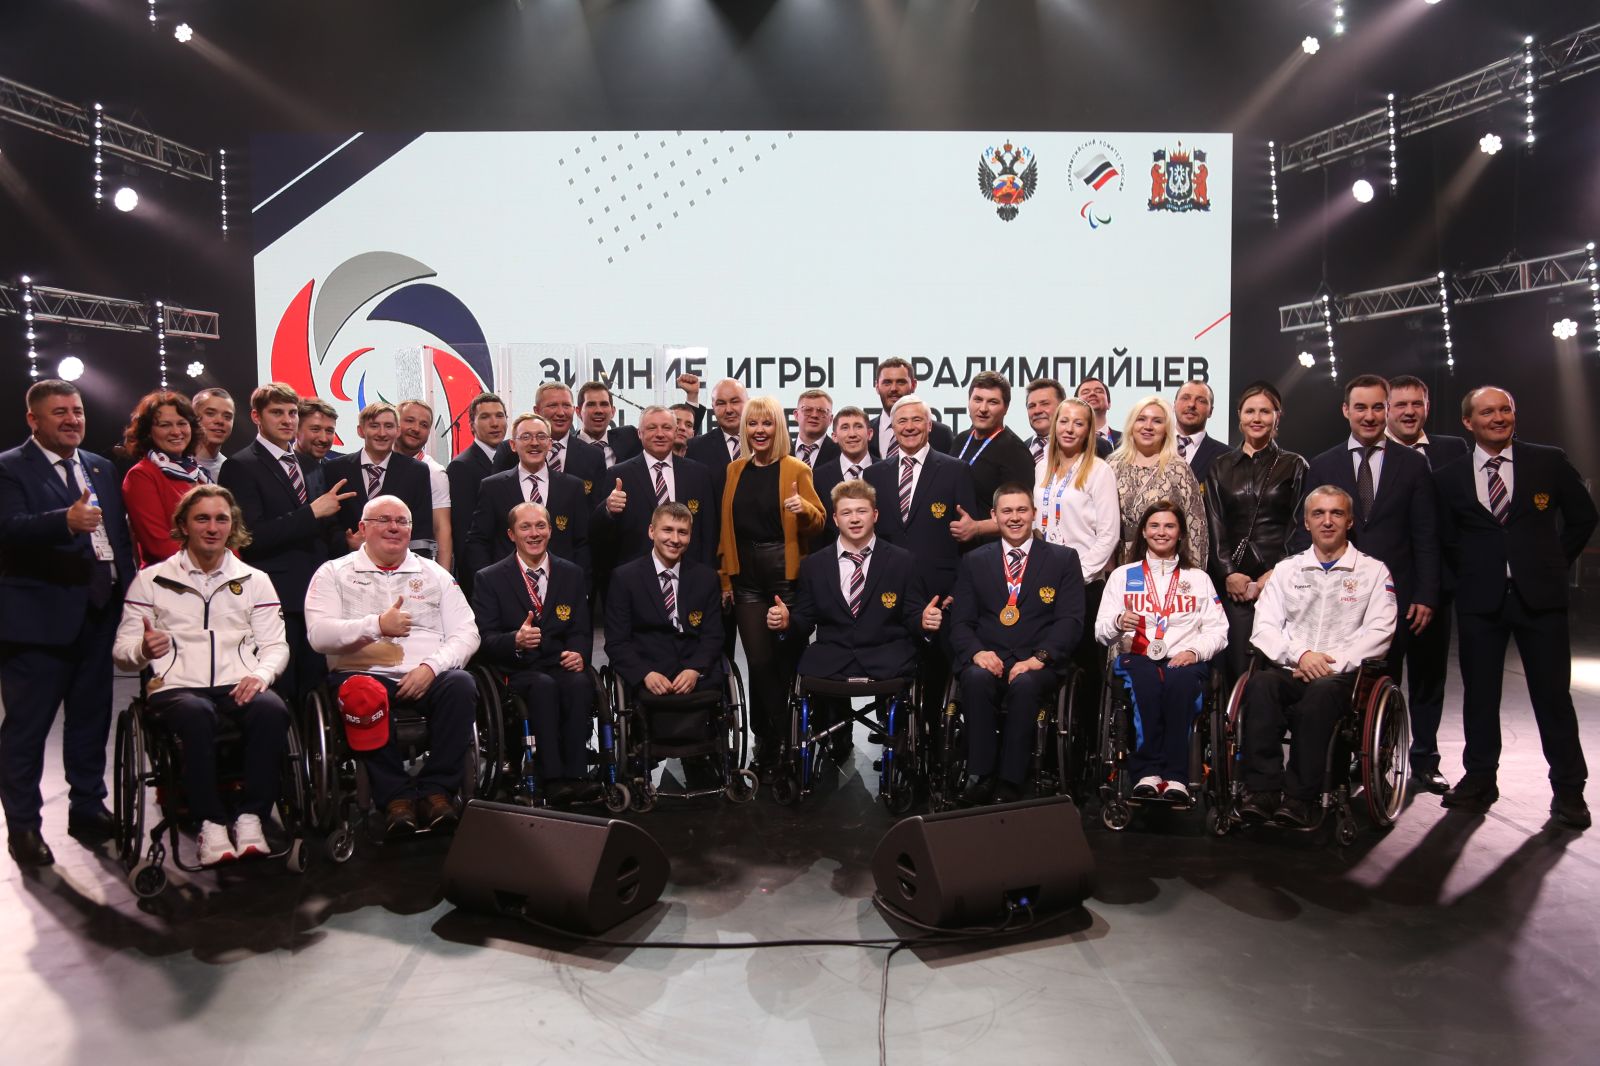 В Ханты-Мансийске состоялось торжественное закрытие Зимних Игр Паралимпийцев «Мы вместе. Спорт»